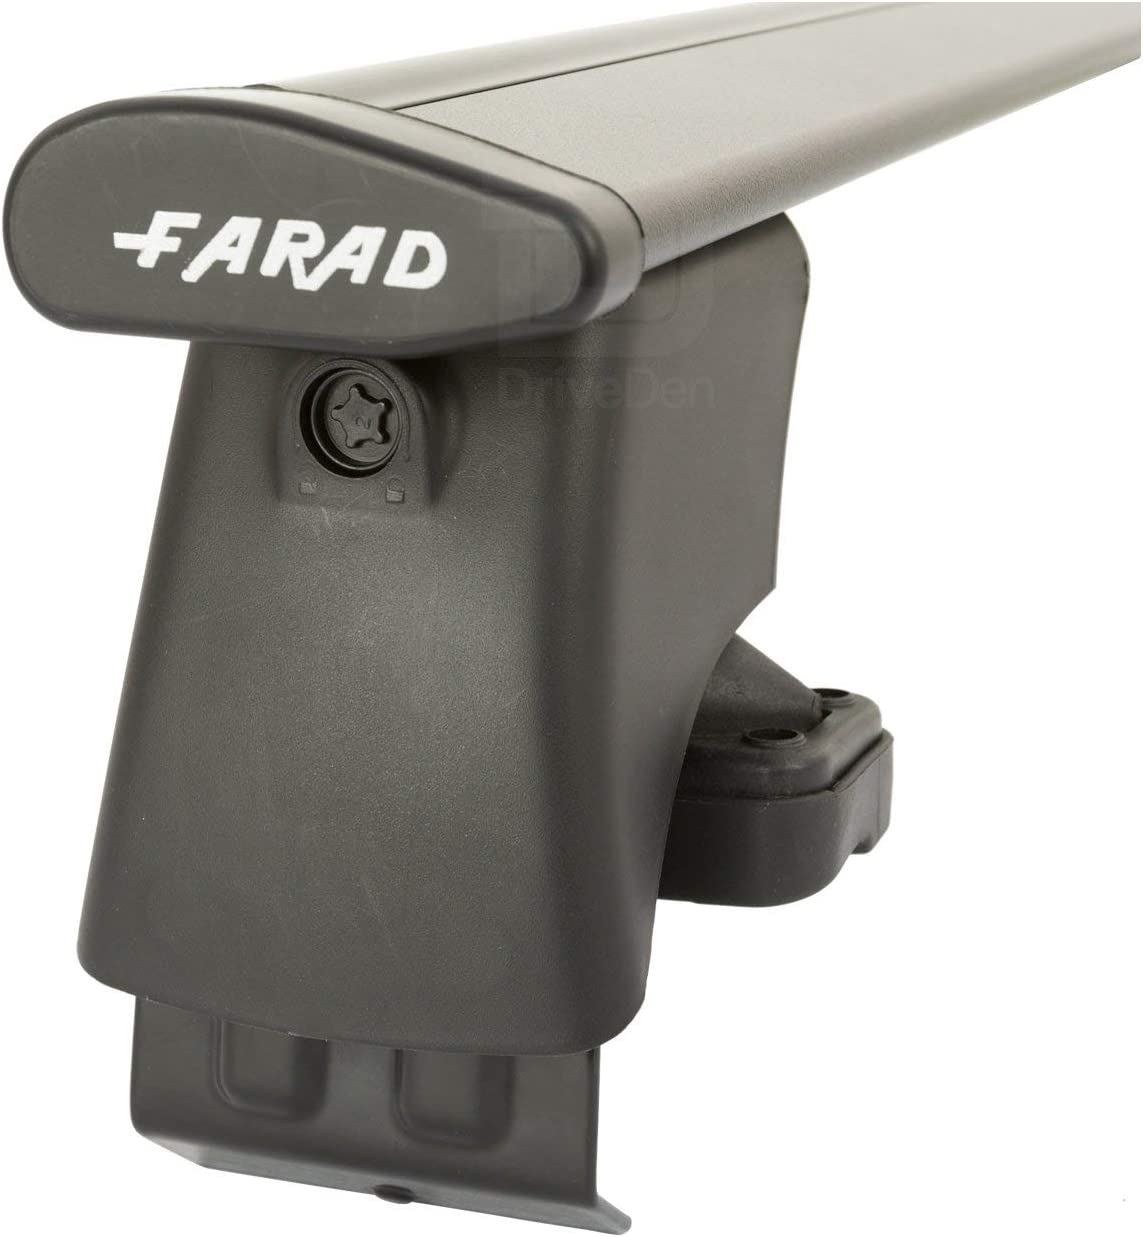 FARAD-Kit H2 per barre portatutto - Ford Fusion 2002-2012 (senza corrimano)